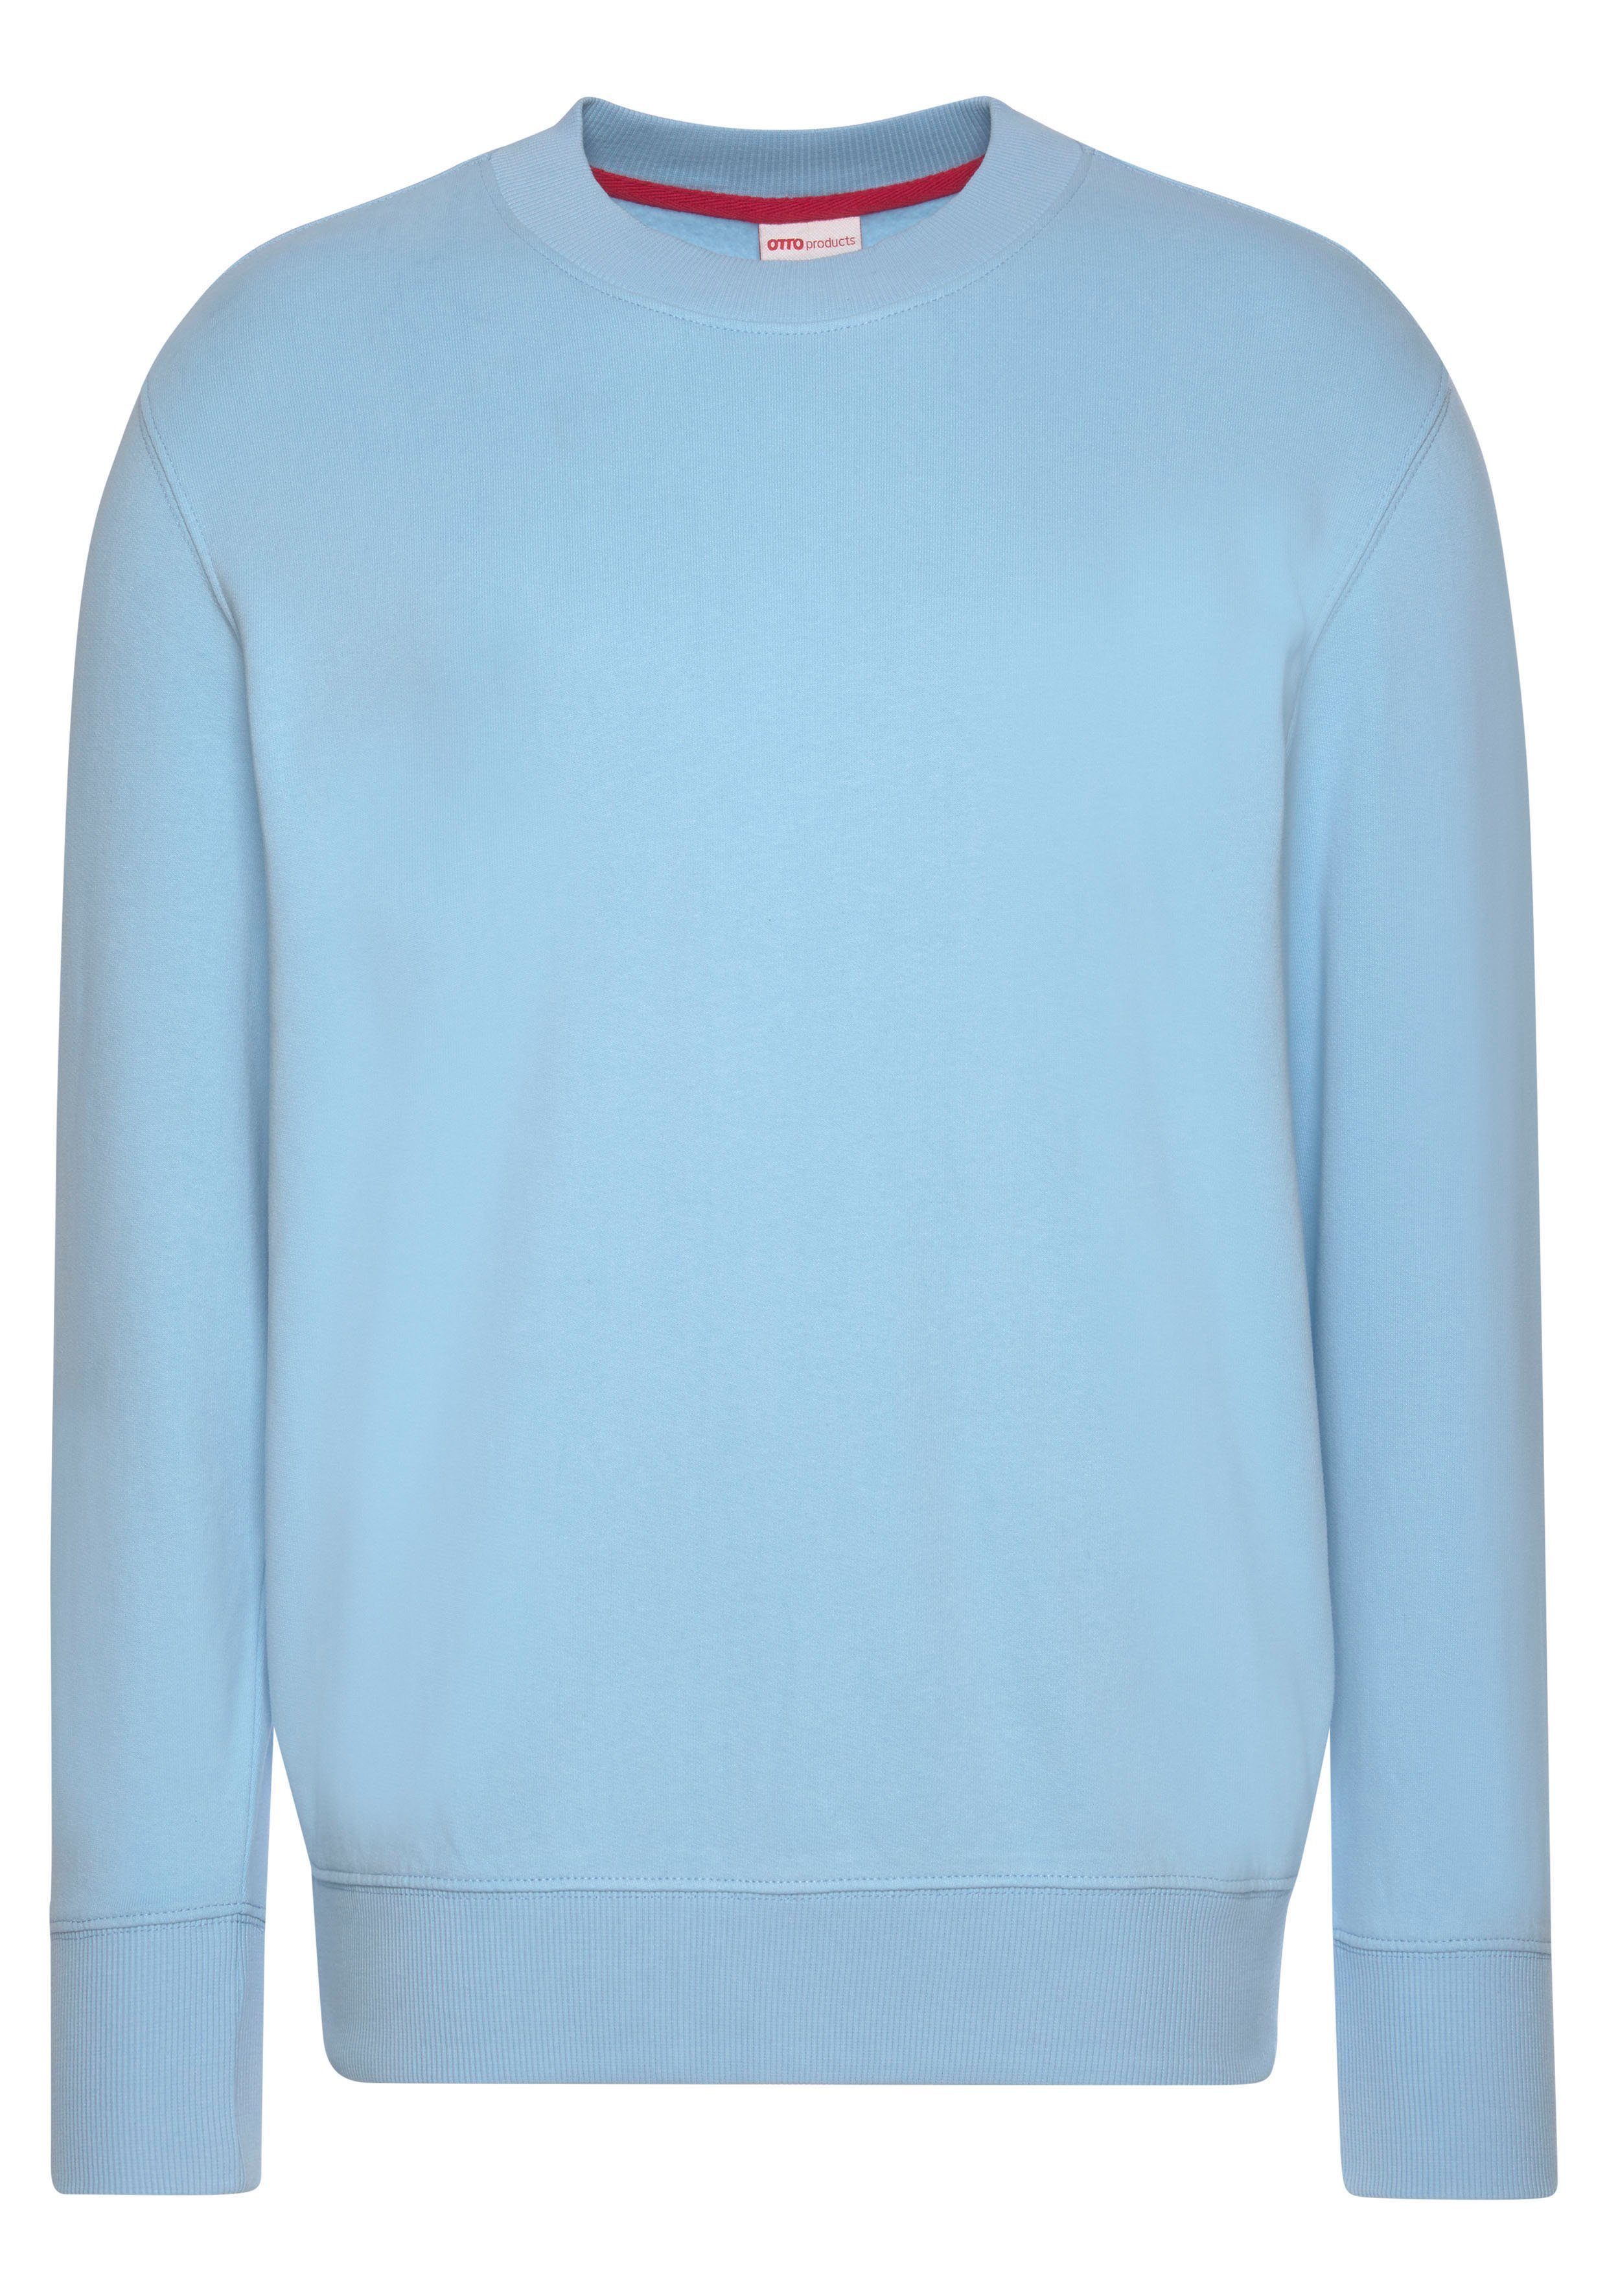 aus Bio-Baumwolle OTTO Sweatshirt hellblau products